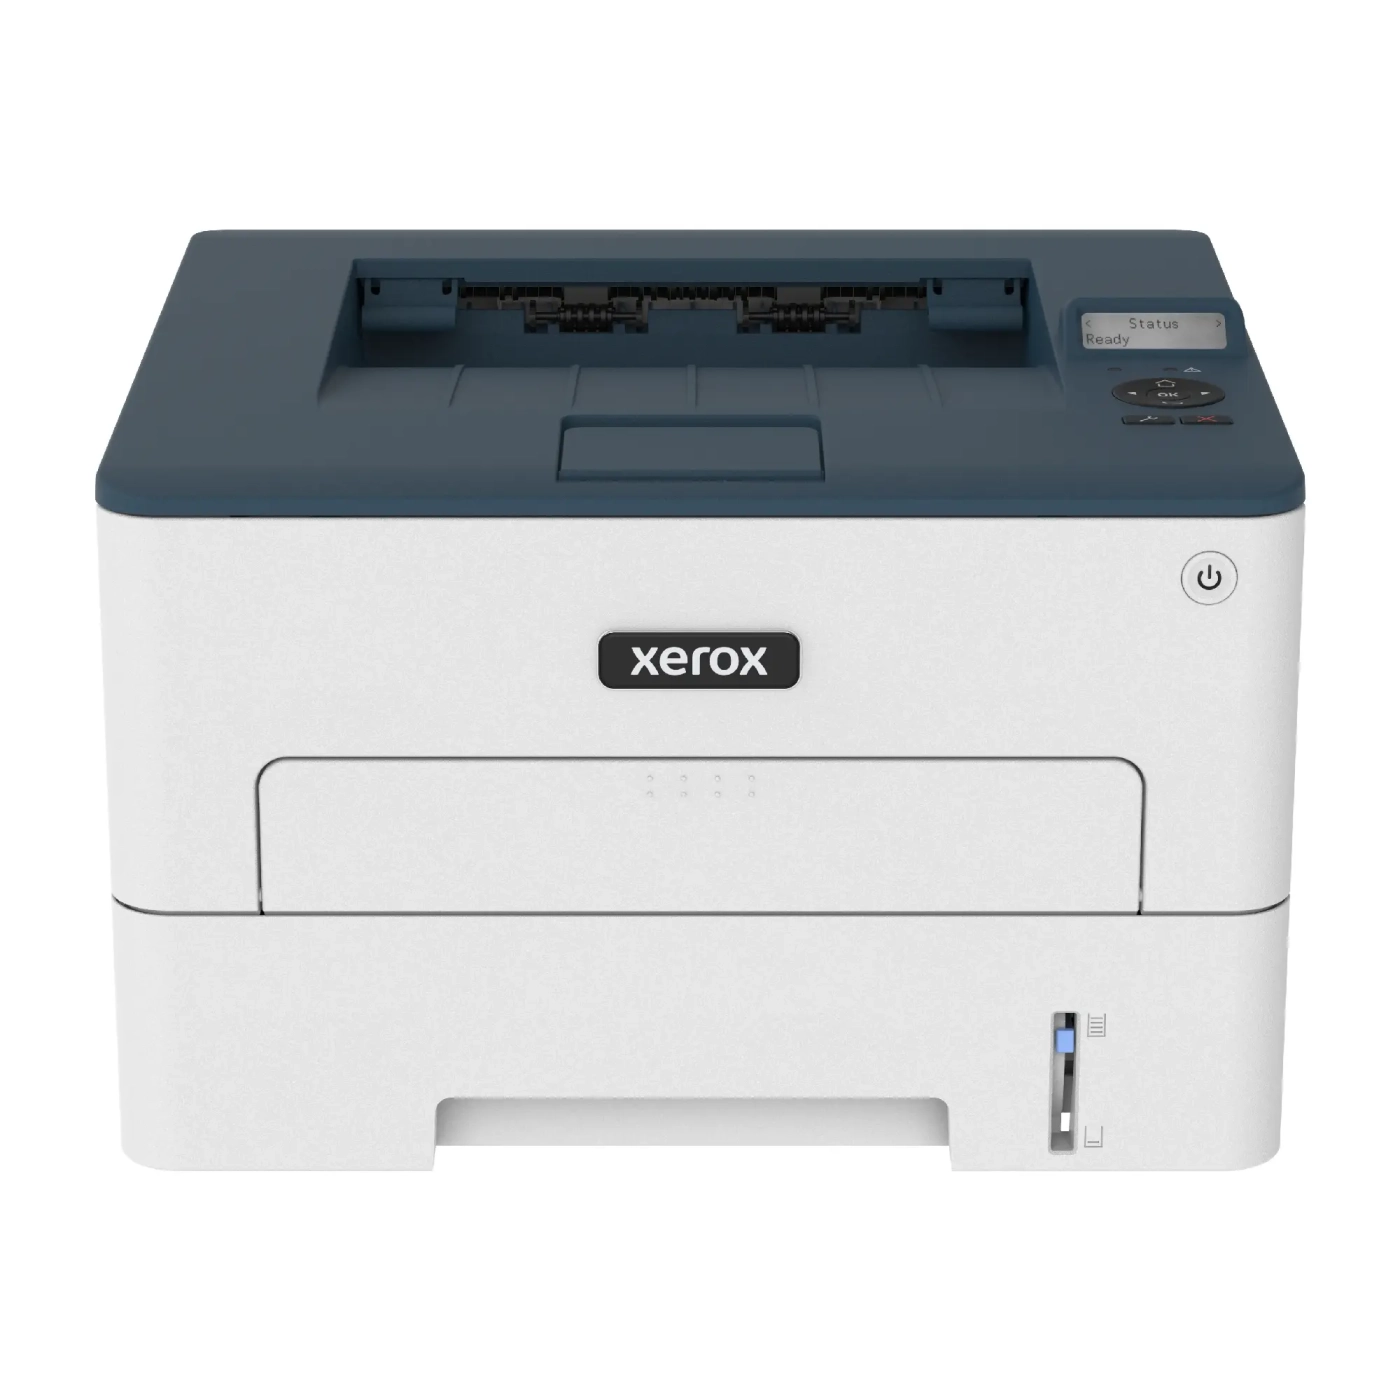 Купить Принтер Xerox B230 (WiFi) - фото 1